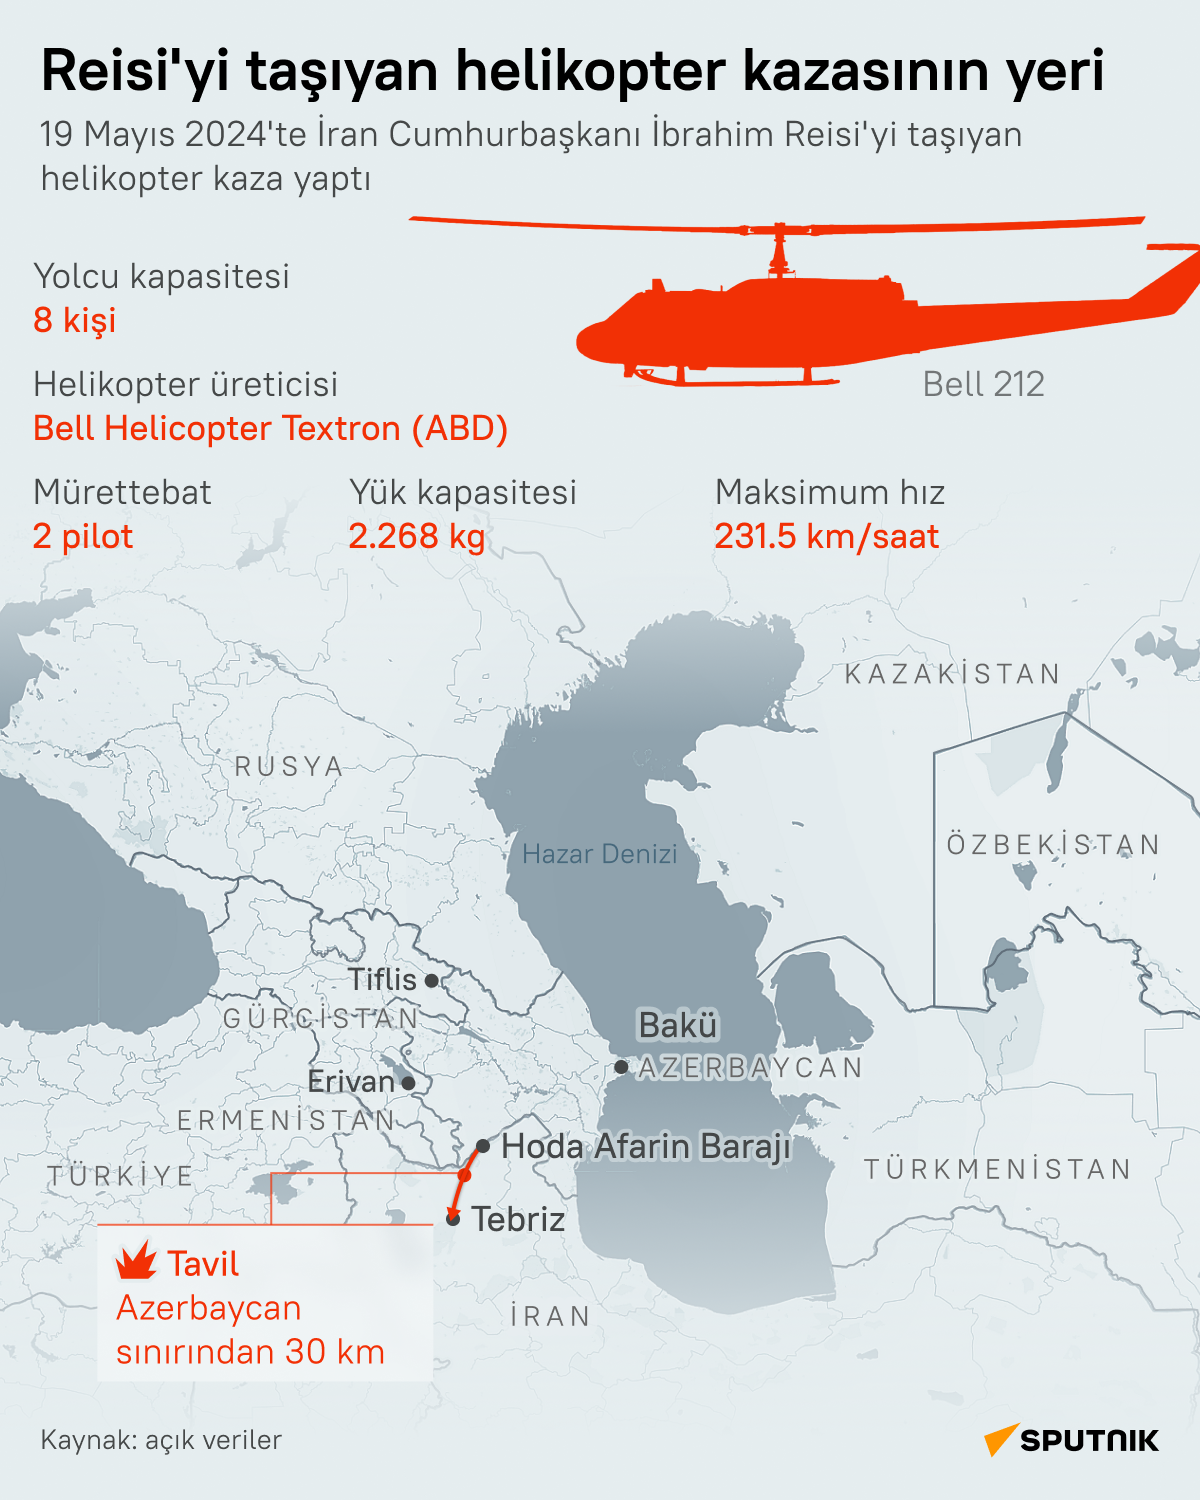 İran Cumhurbaşkanı Reisi'yi taşırken kaza yapan helikopterin teknik özellikleri nelerdir? - Sputnik Türkiye